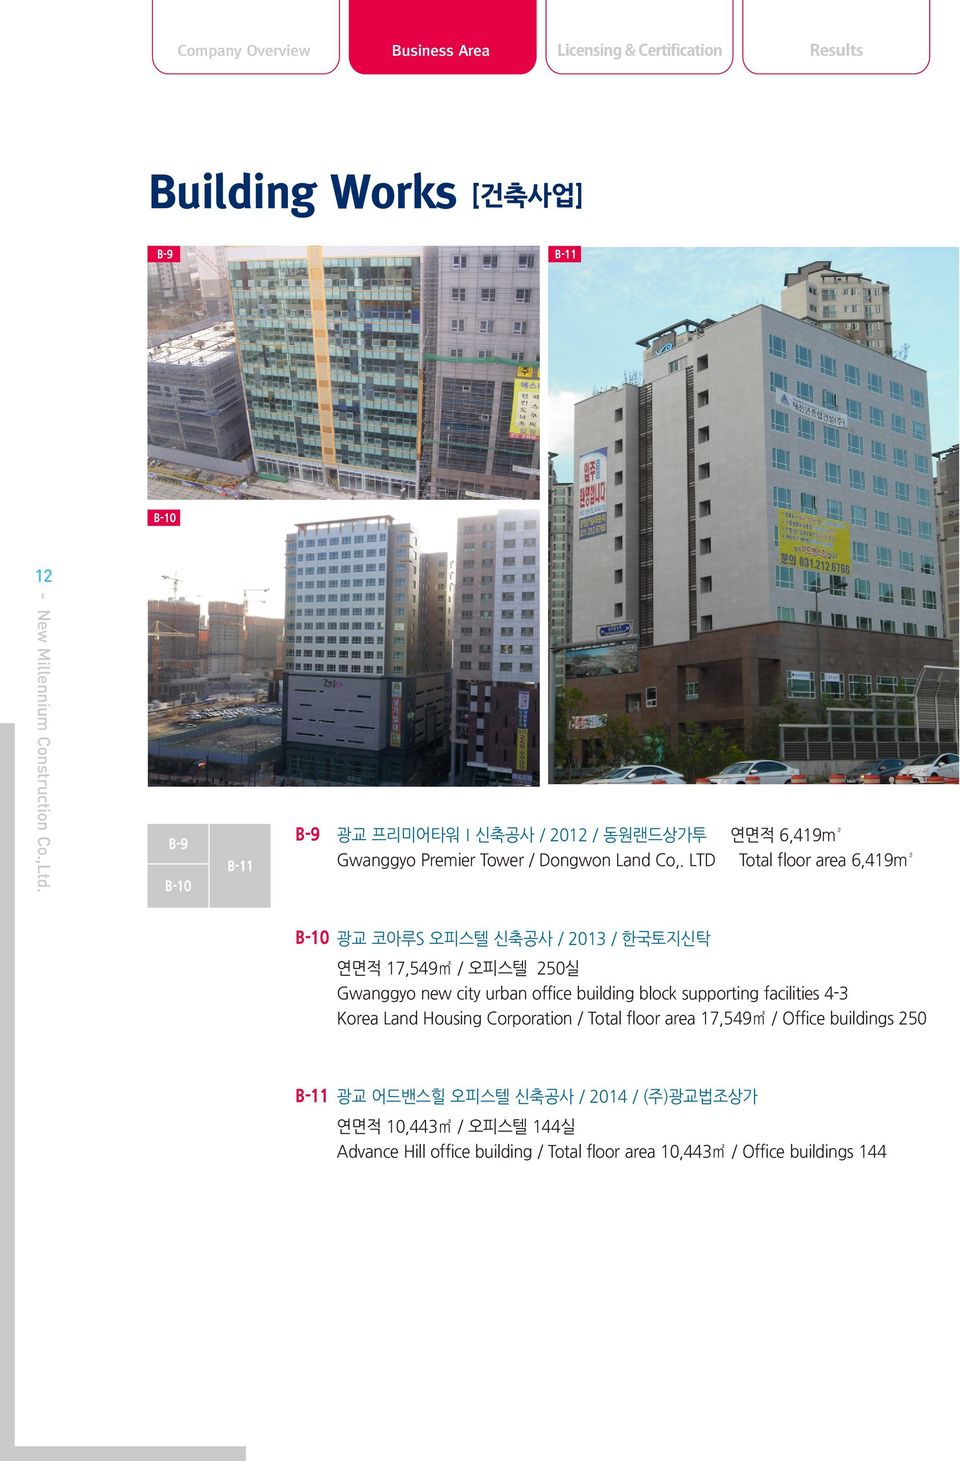 LTD Total floor area 6,419m² B-10 B-10 광교 코아루S 오피스텔 신축공사 / 2013 / 한국토지신탁 연면적 17,549 / 오피스텔 250실 Gwanggyo new city urban office building block